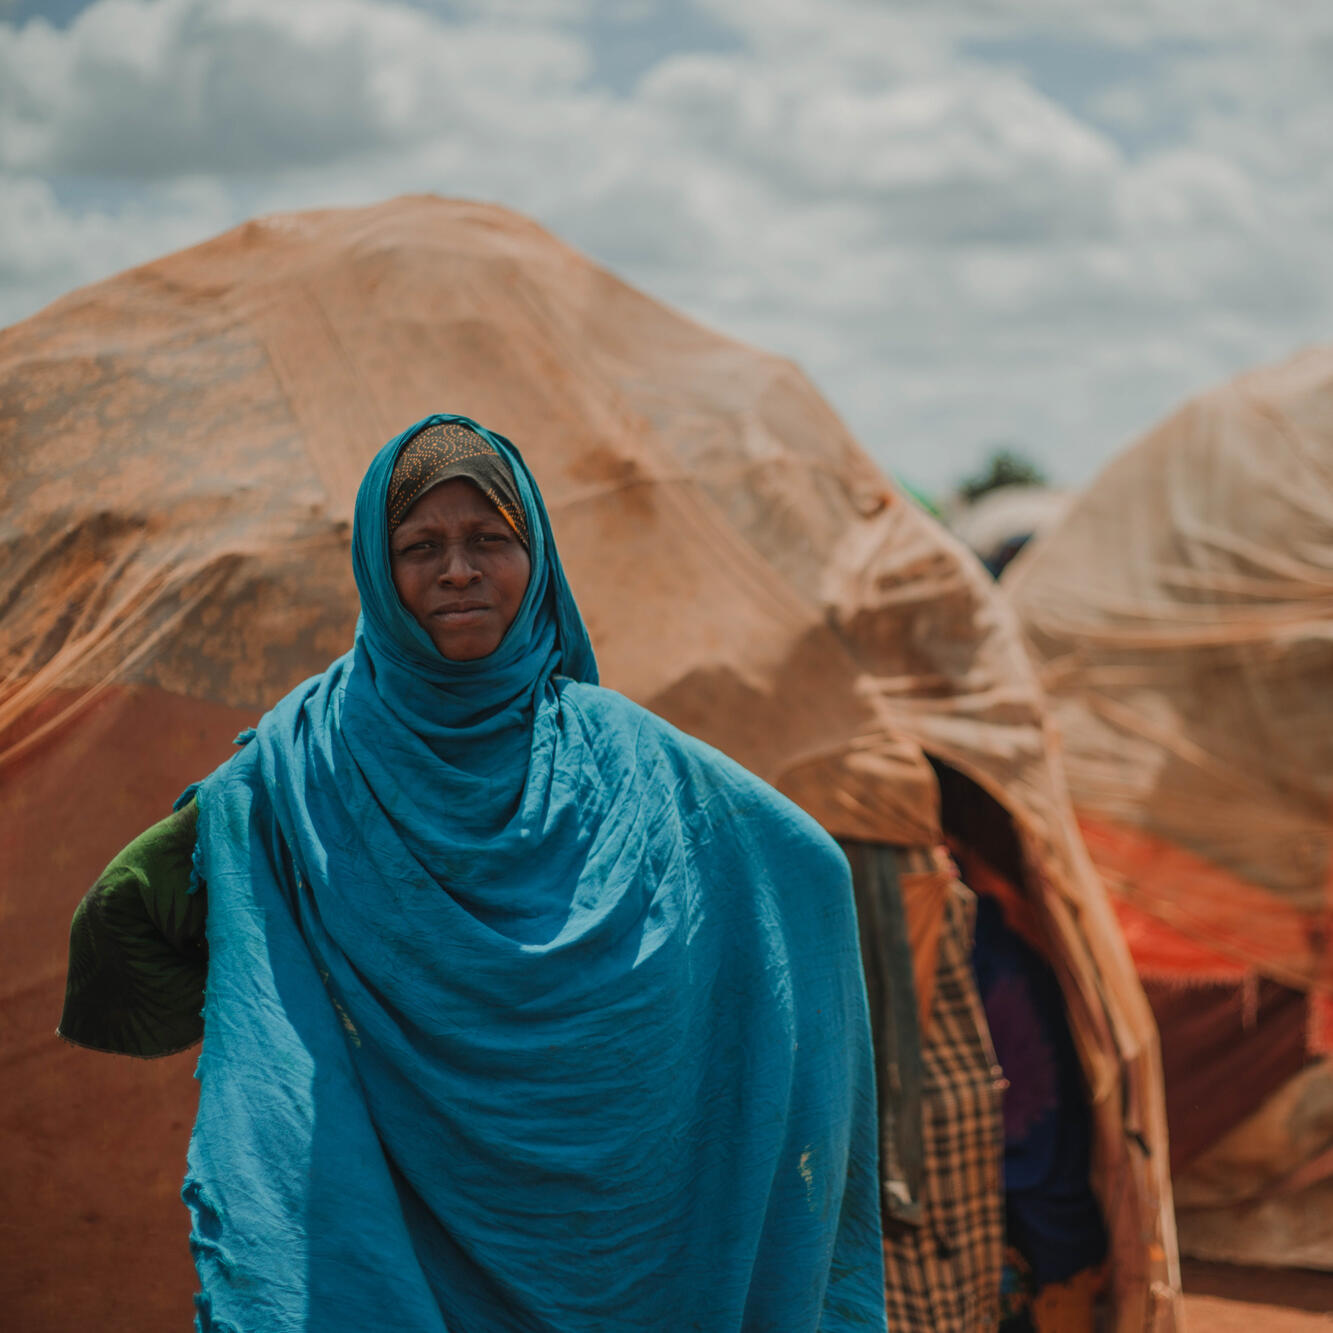 비스트라 압둘라히는 소말리아의 국내 실향민들을 위한 토르토로 캠프에 살고 있습니다.